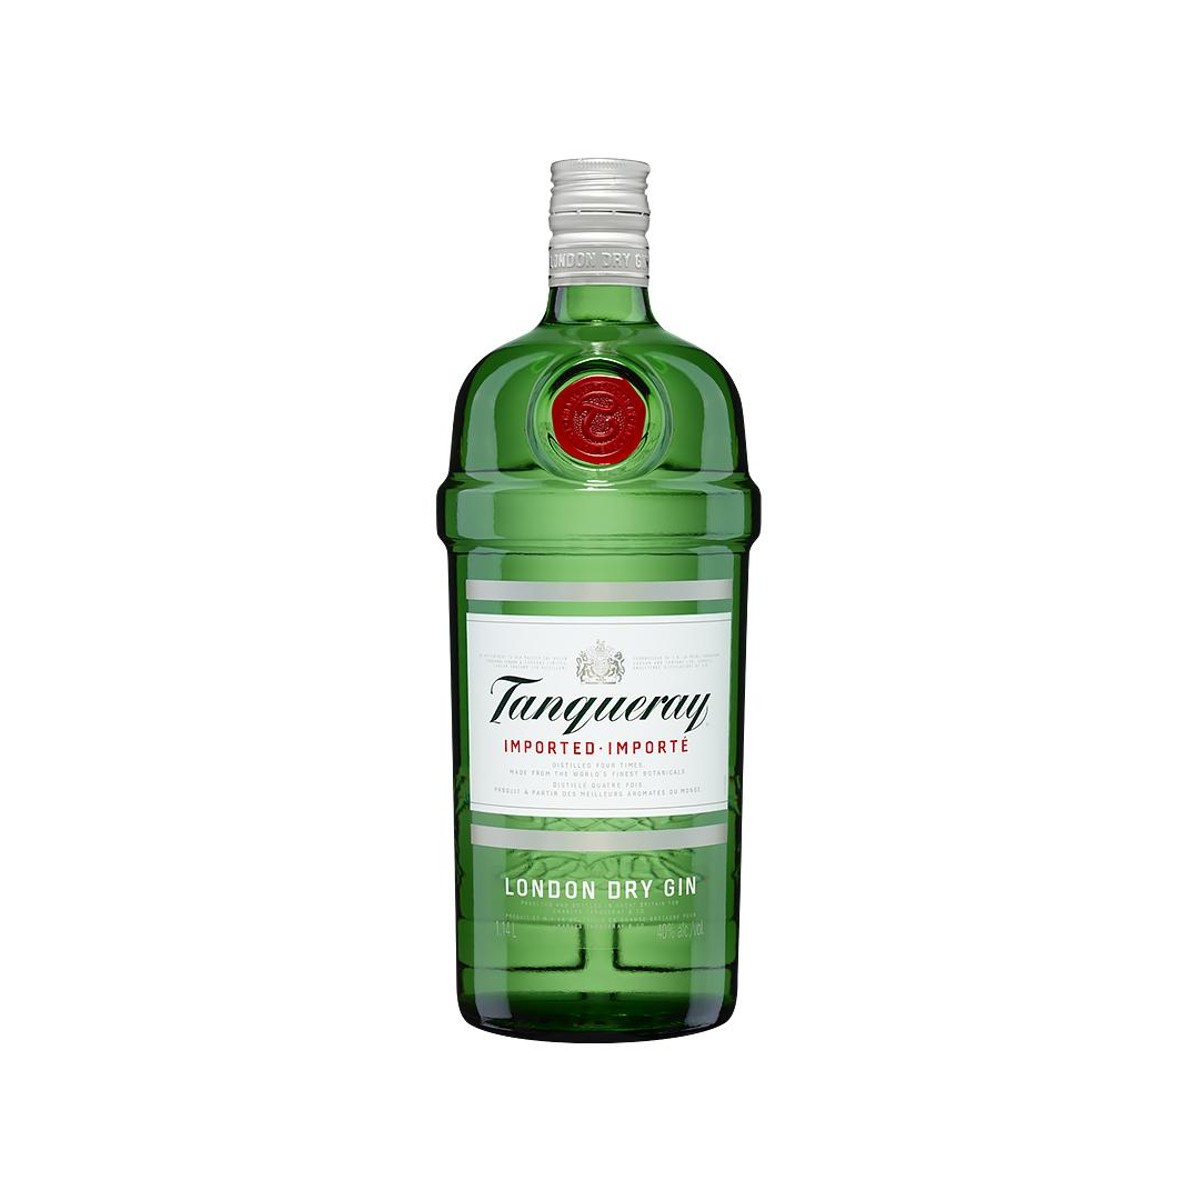 Hendrick's Gin, 750ml Glass Bottle, ABV 44% 